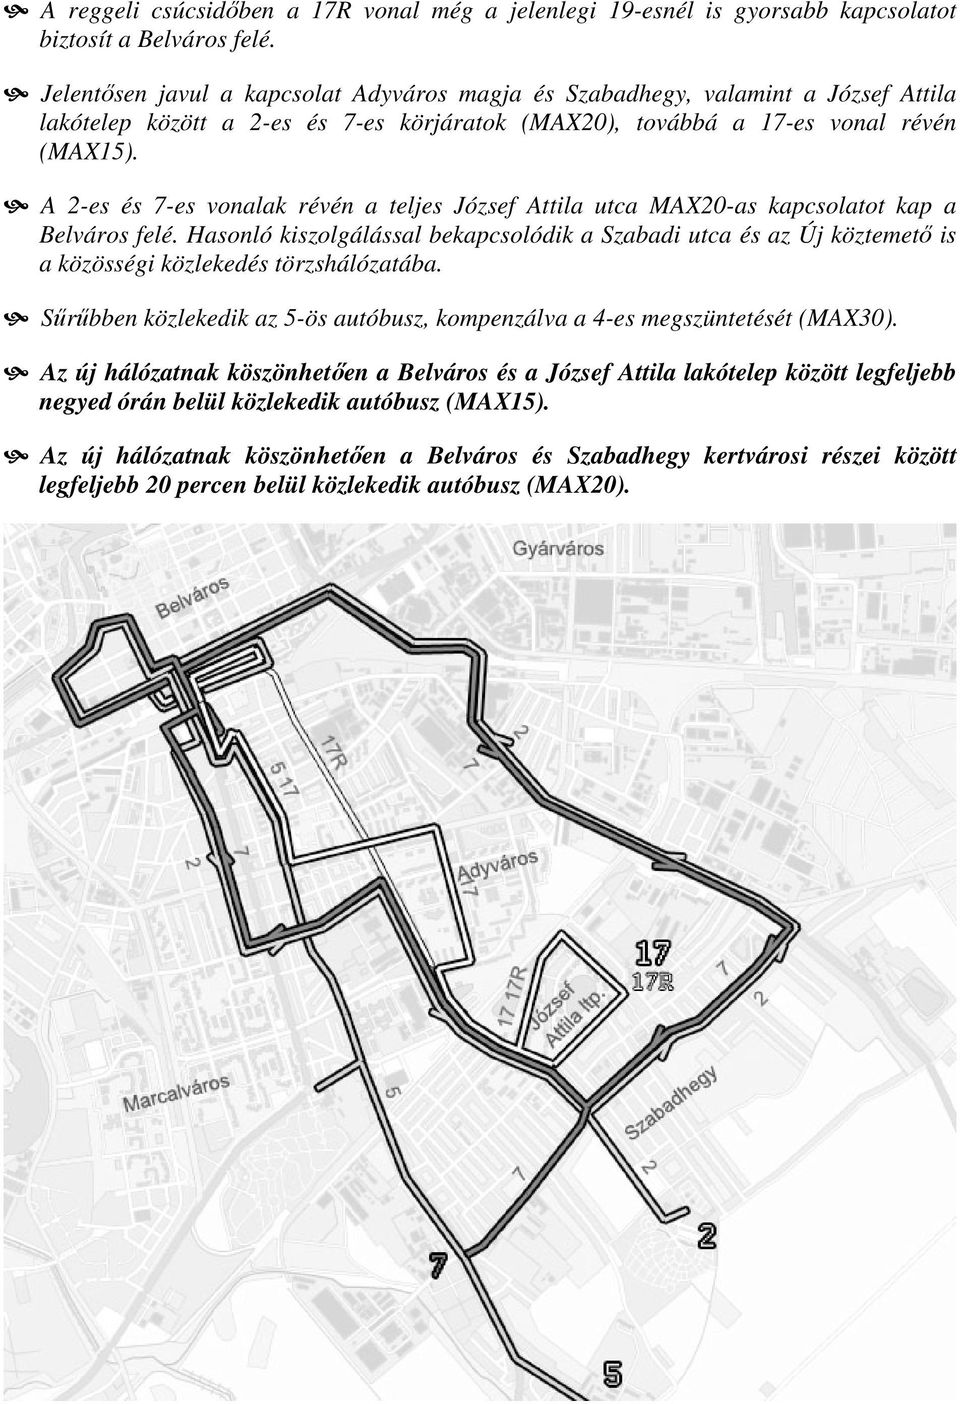 A 2-es és 7-es vonalak révén a teljes József Attila utca MAX20-as kapcsolatot kap a Belváros felé.